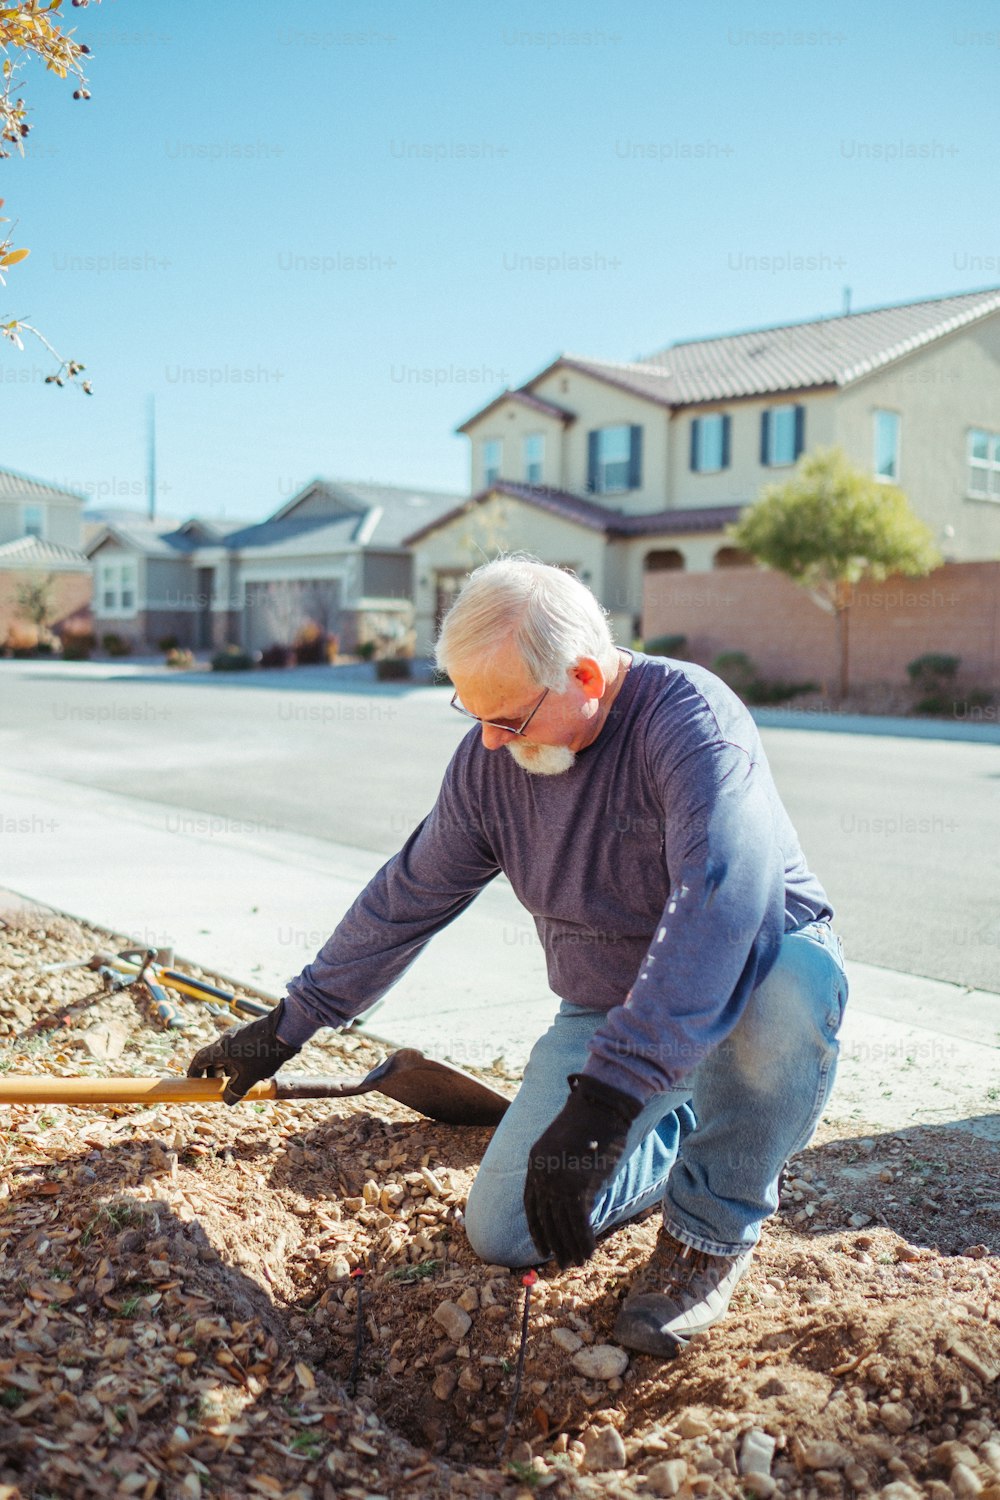 Un uomo sta scavando una buca nel terreno